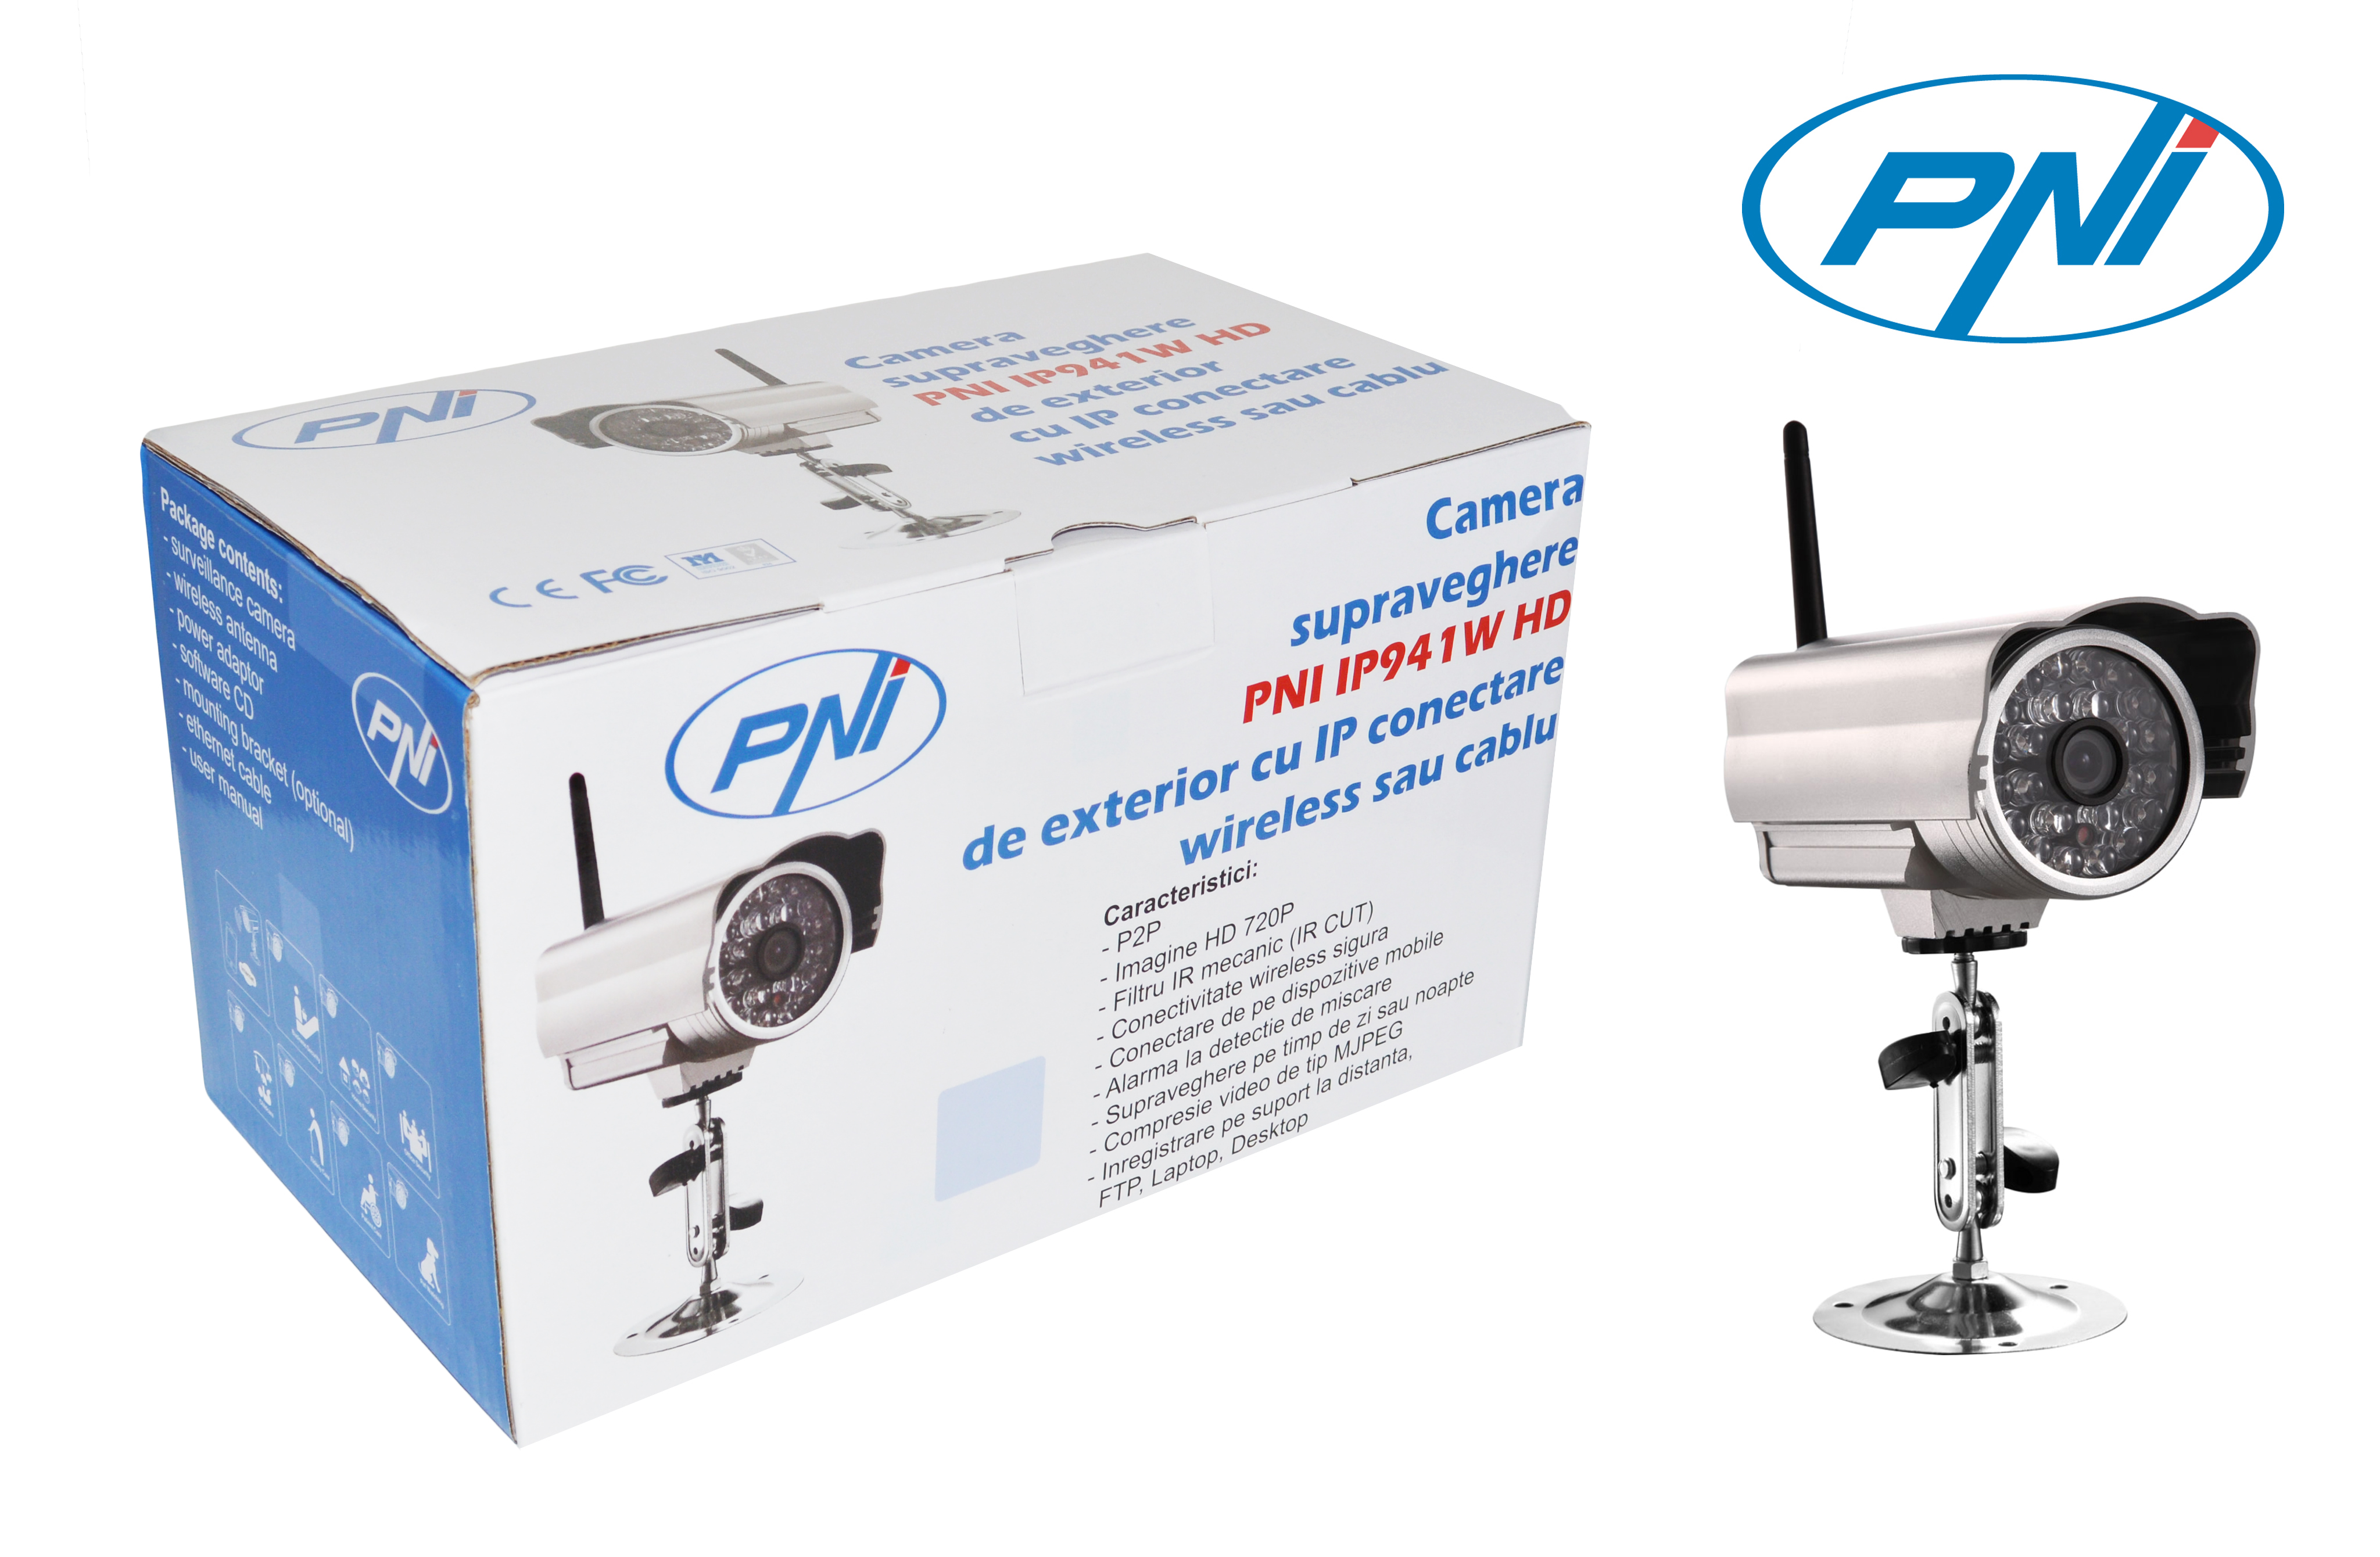 Camera supraveghere cu IP PNI IP941W HD 720p de exterior conectare wireless sau cablu